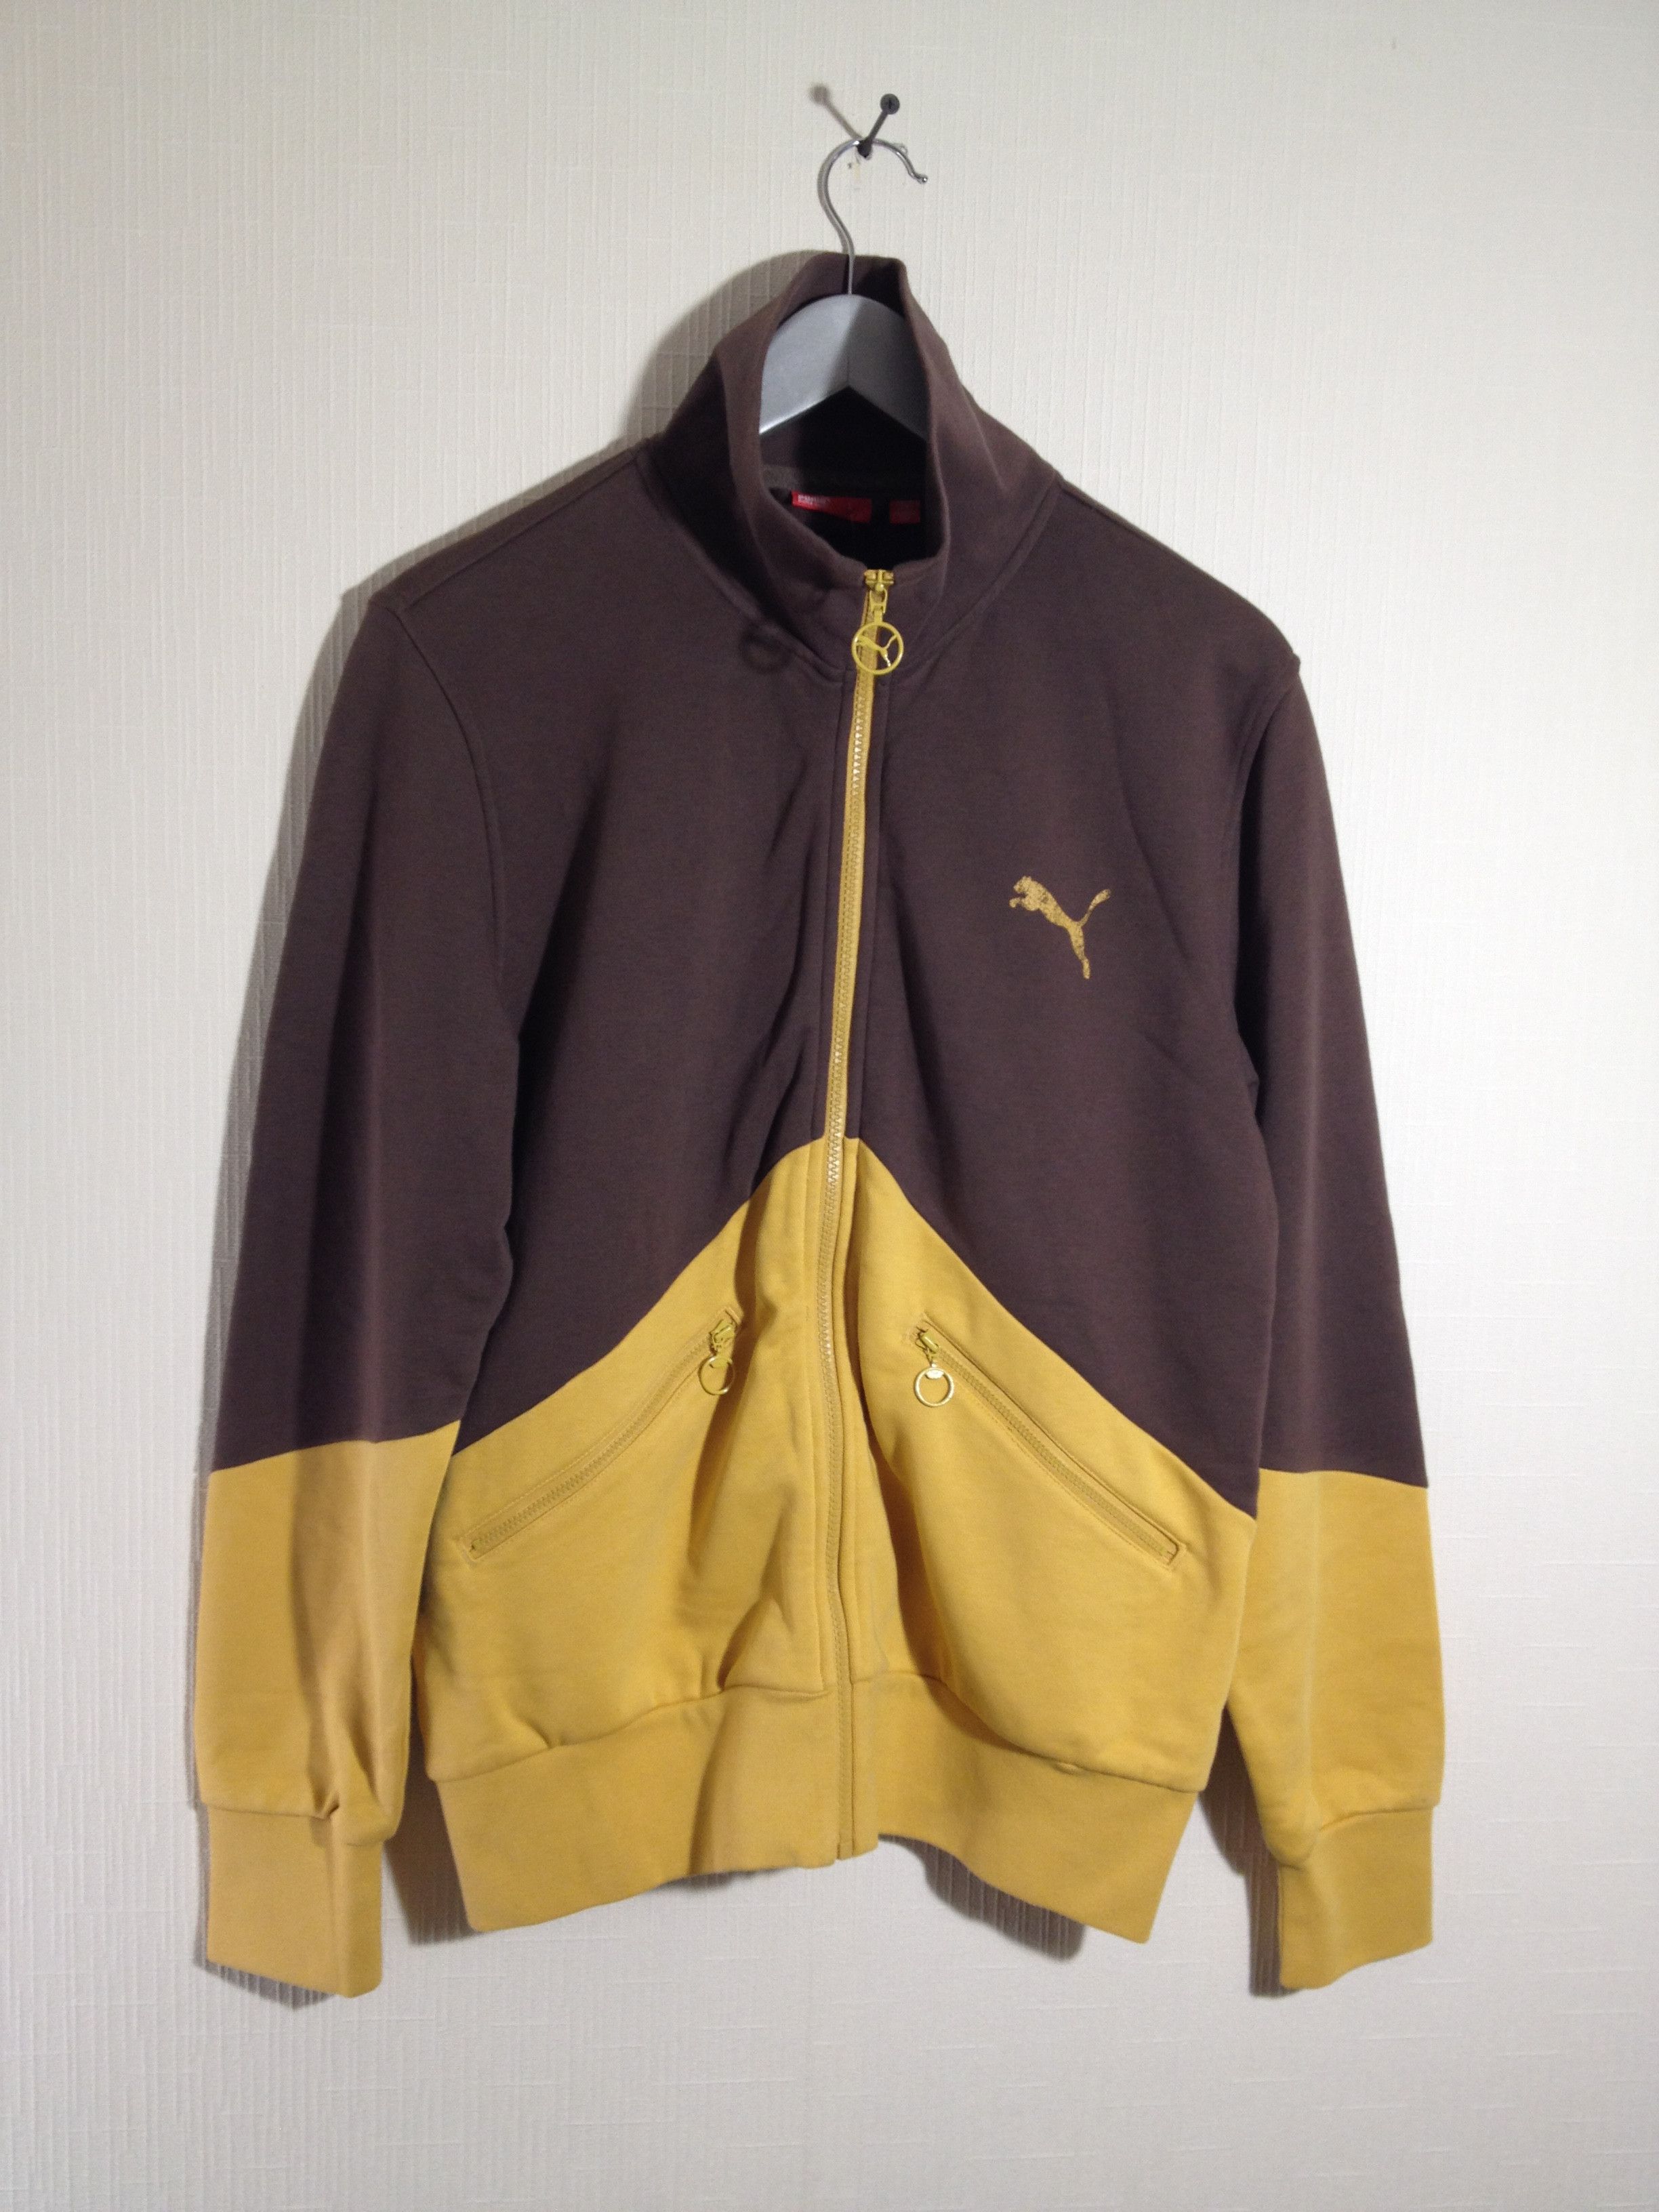 Vintage track jacket | Grailed